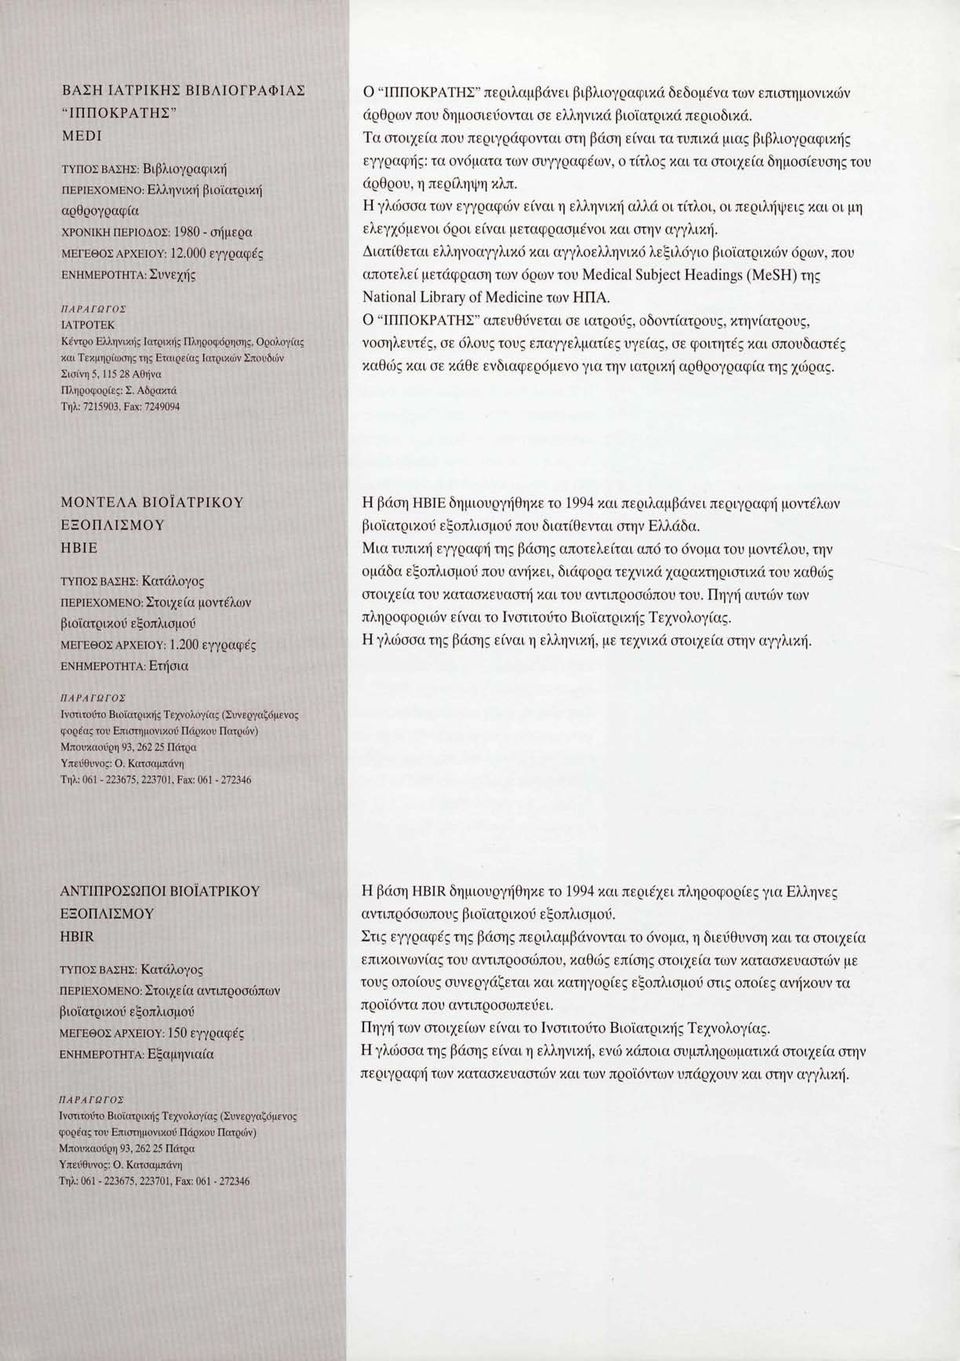 Αδραχτά Τηλ: 7215903, Fax: 7249094 Ο "ΙΠΠΟΚΡΑΤΗΣ" περιλαμβάνει βιβλιογραφικά δεδομένα των επιστημονικών άρθρων που δημοσιεύονται σε ελληνικά βιοϊατρικά περιοδικά.